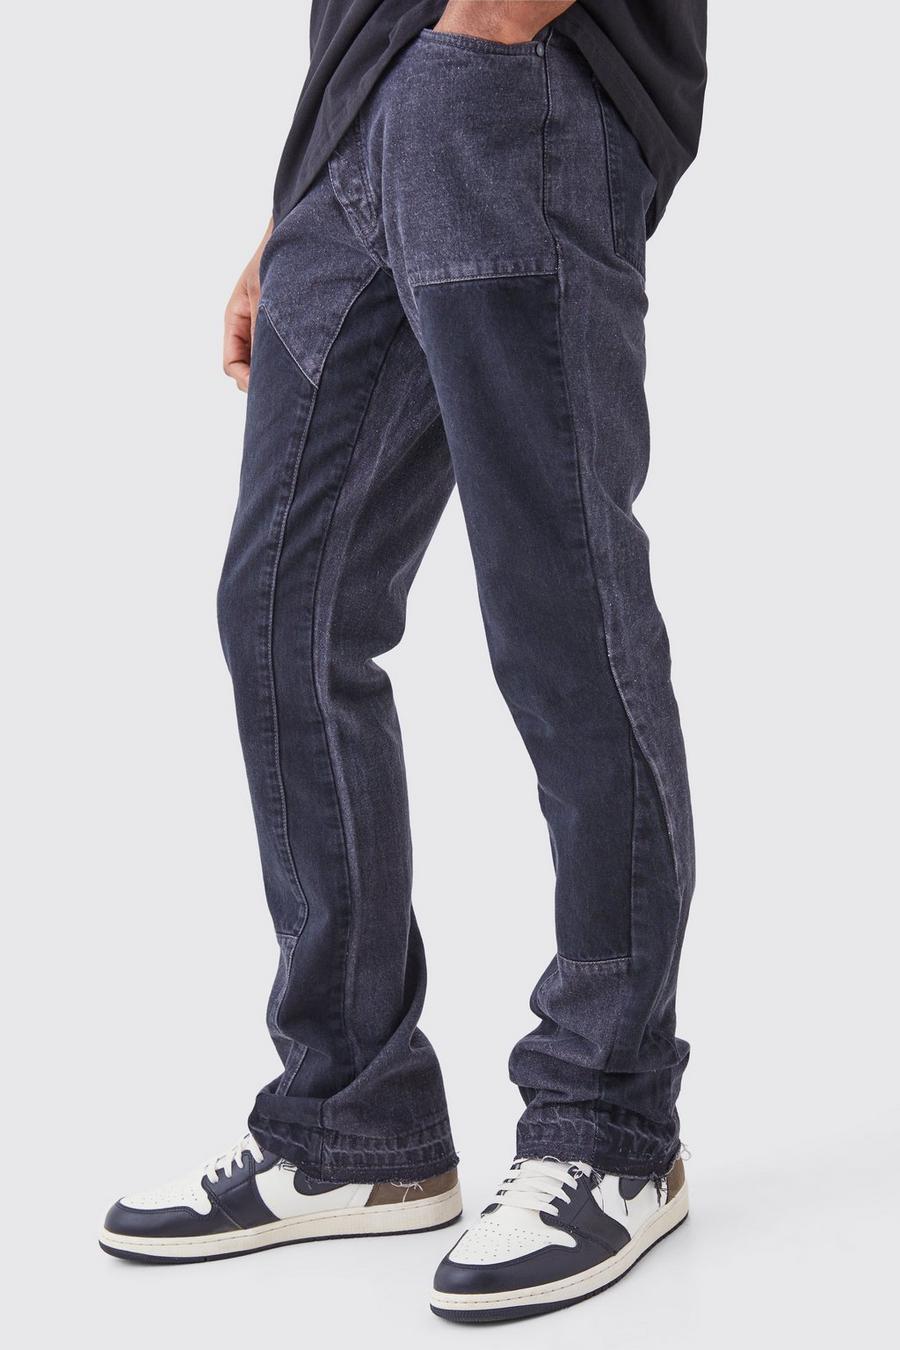 Jeans Tall Slim Fit in denim rigido sovratinti a zampa, Charcoal